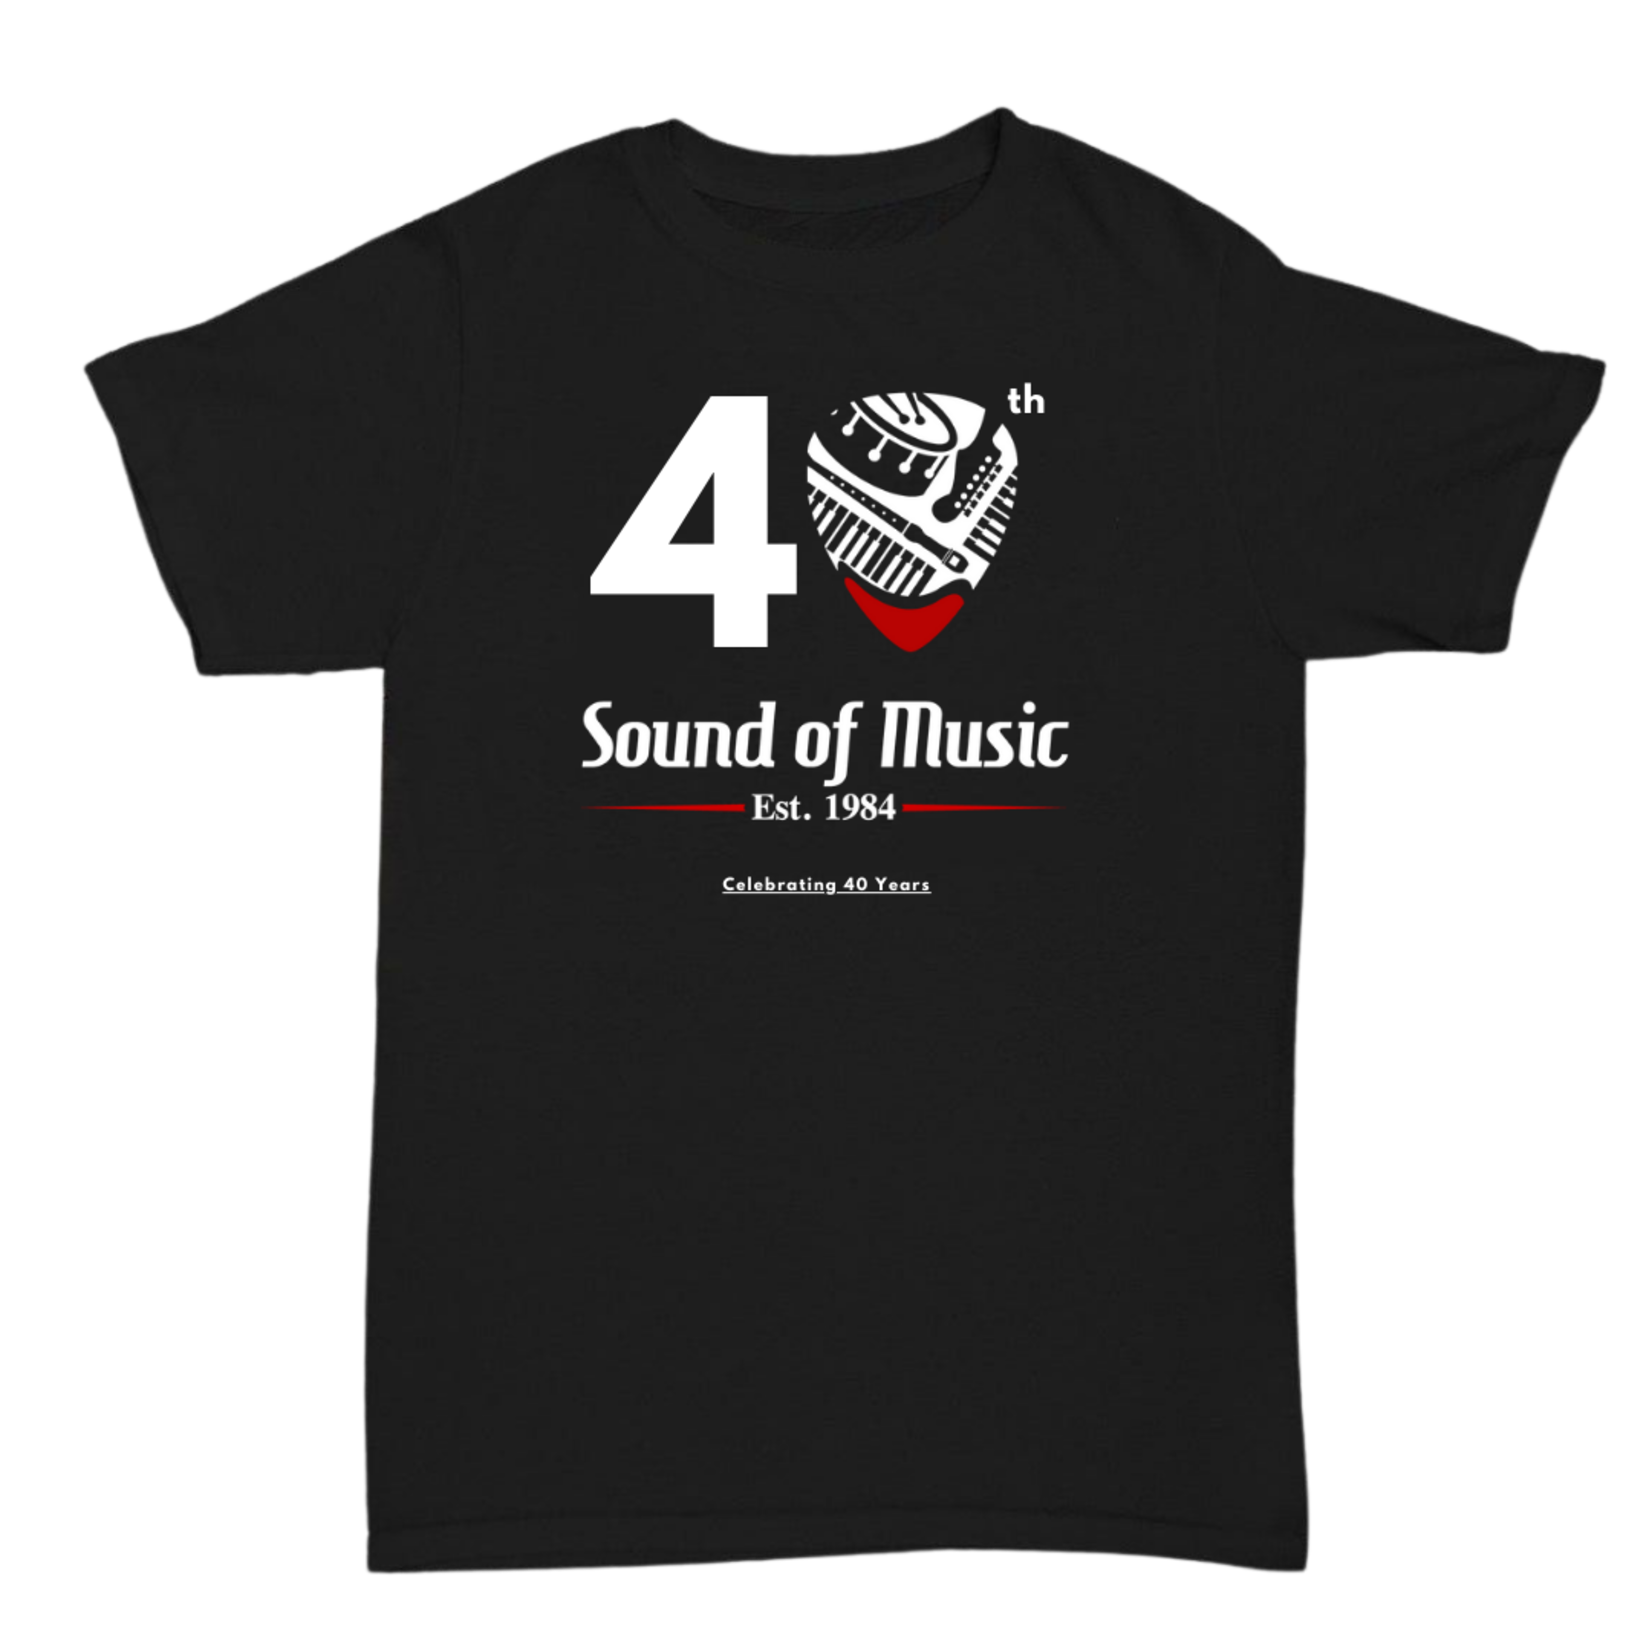 Sound of Music 40th Anniversary Shirt - Medium